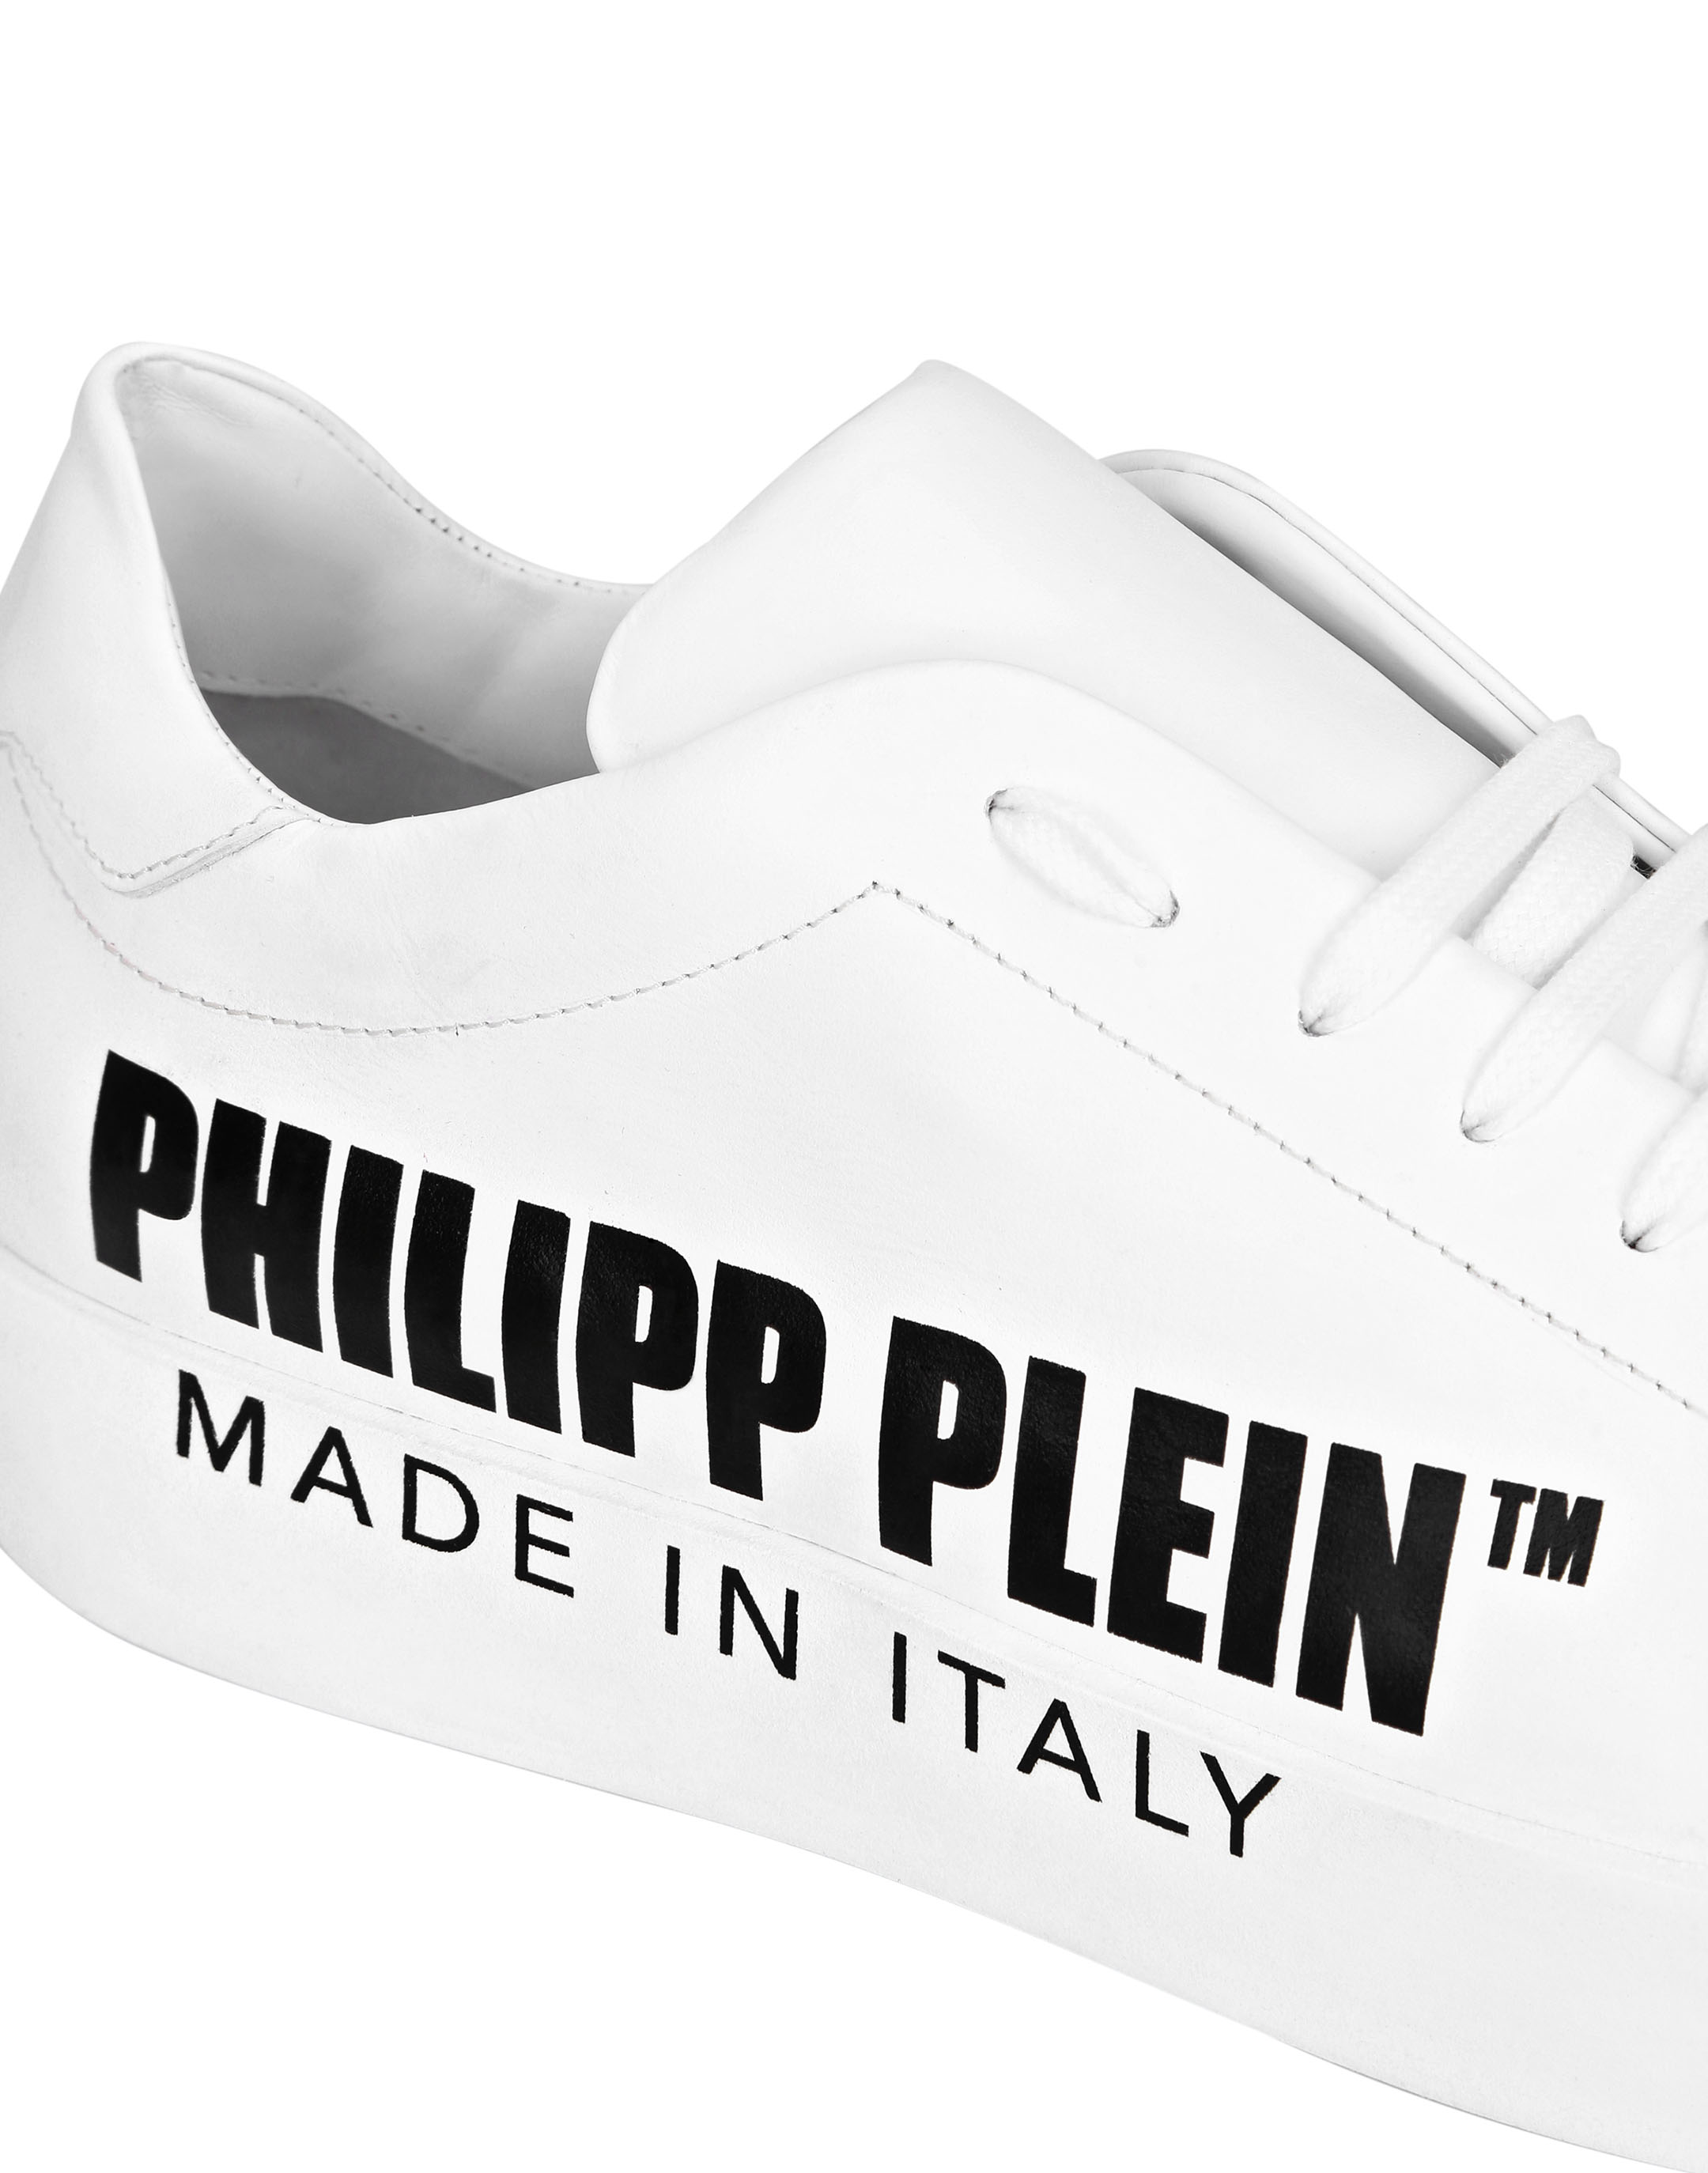 Leather Lo-Top Sneakers Philipp Plein TM | Philipp Plein Outlet